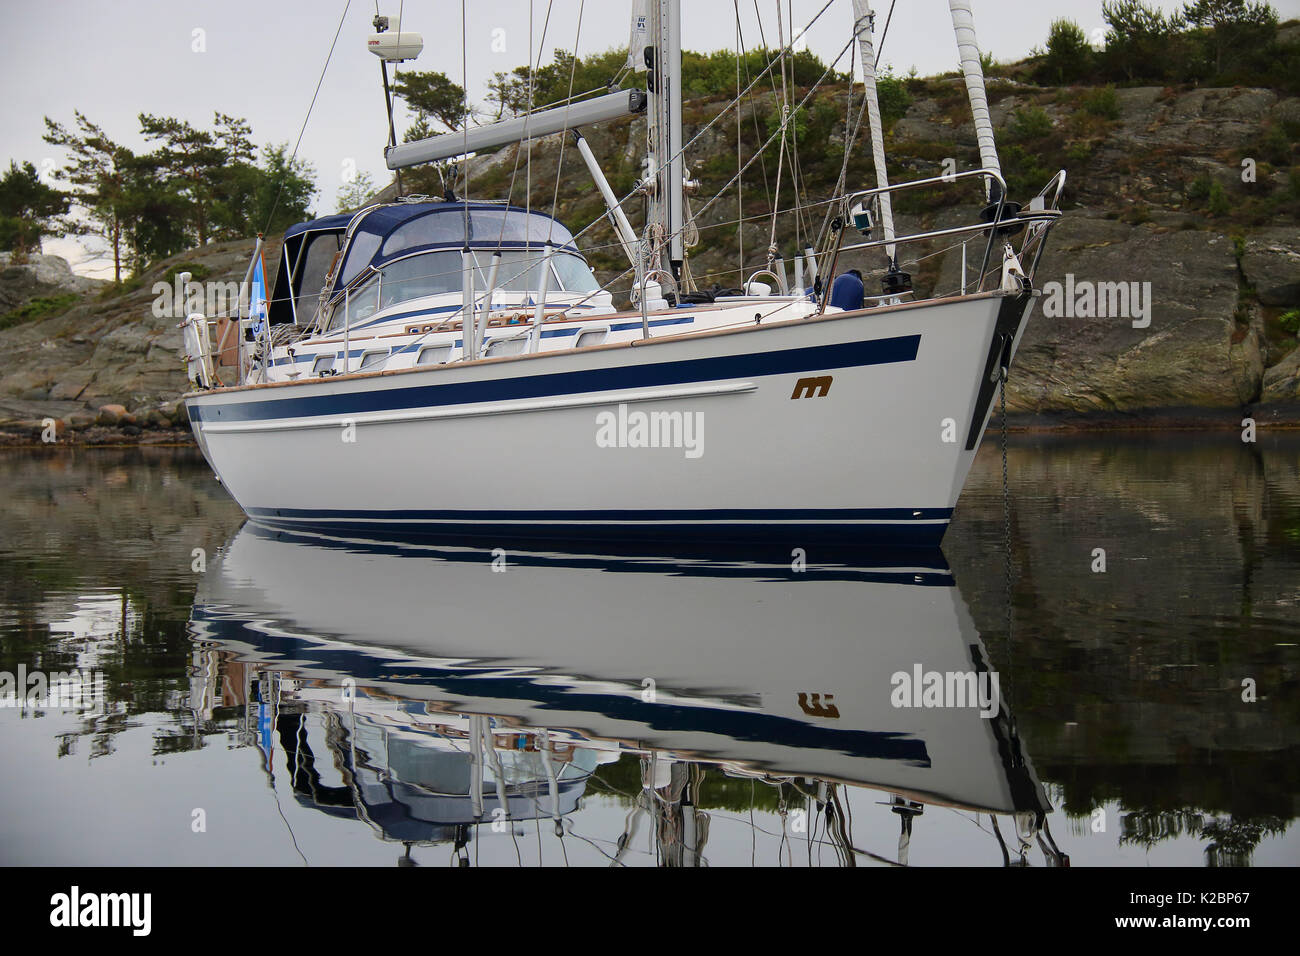 Yachtcharter in geschützten Bucht ankern. Schweden, Juni 2014. Stockfoto